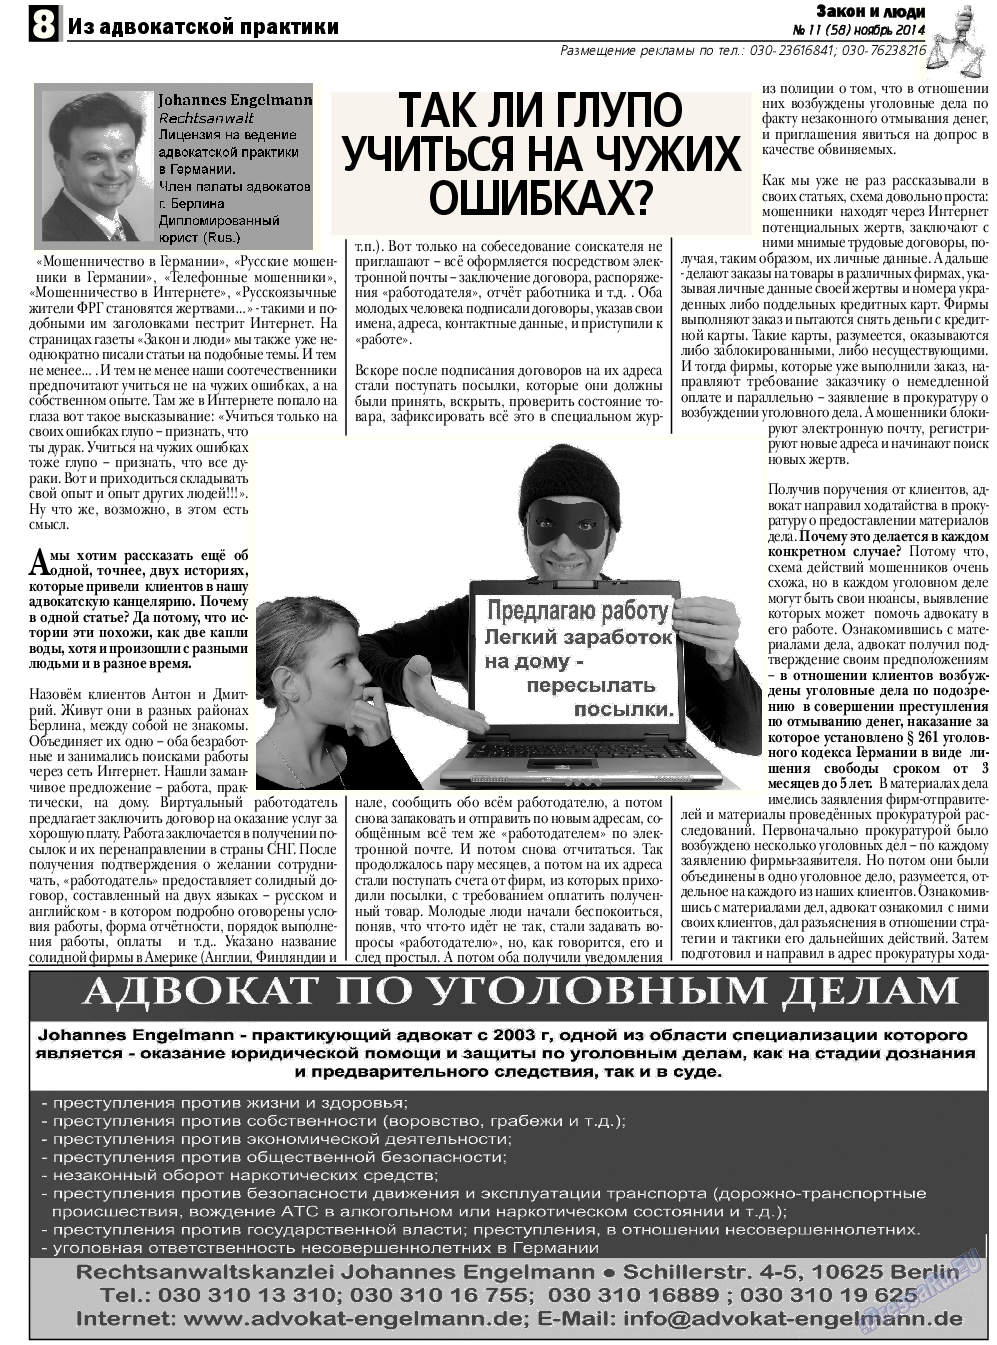 Закон и люди, газета. 2014 №11 стр.8